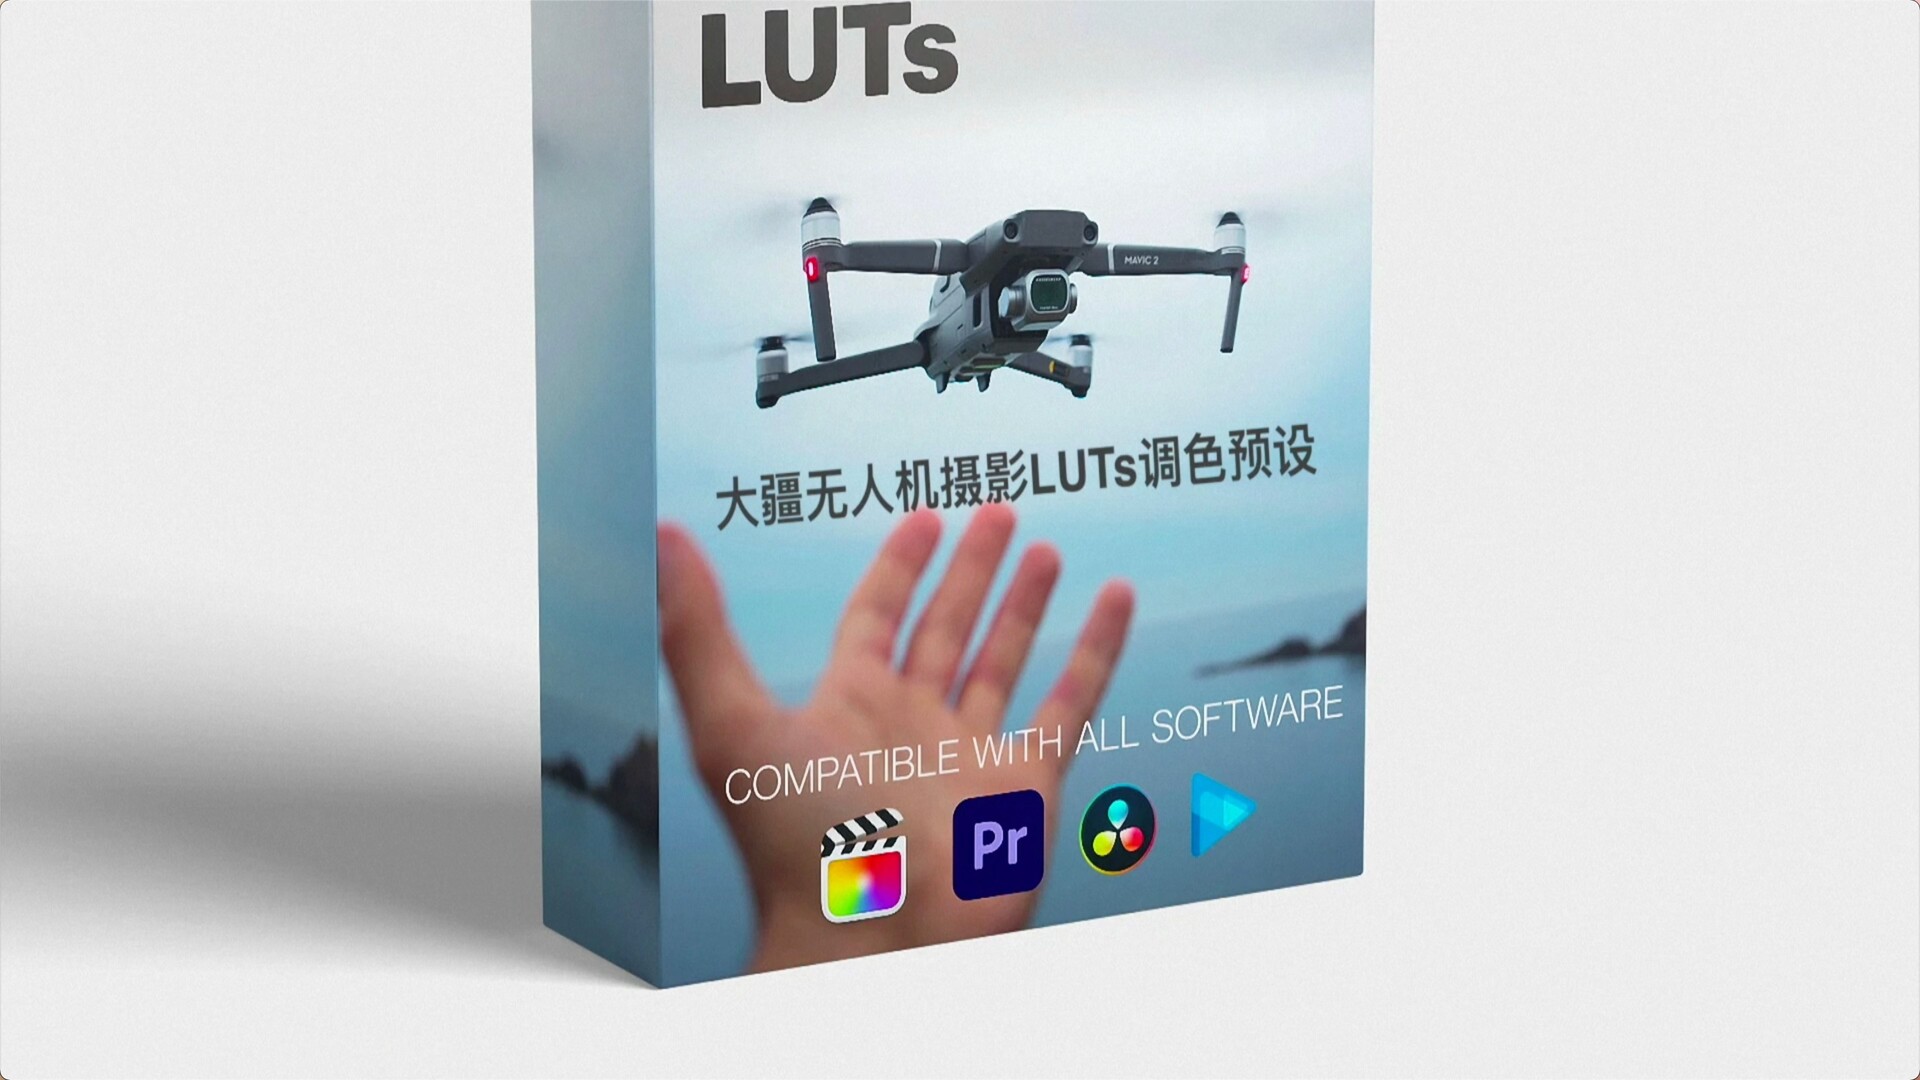 大疆无人机摄影LUTs调色预设DJI Drone LUTs 